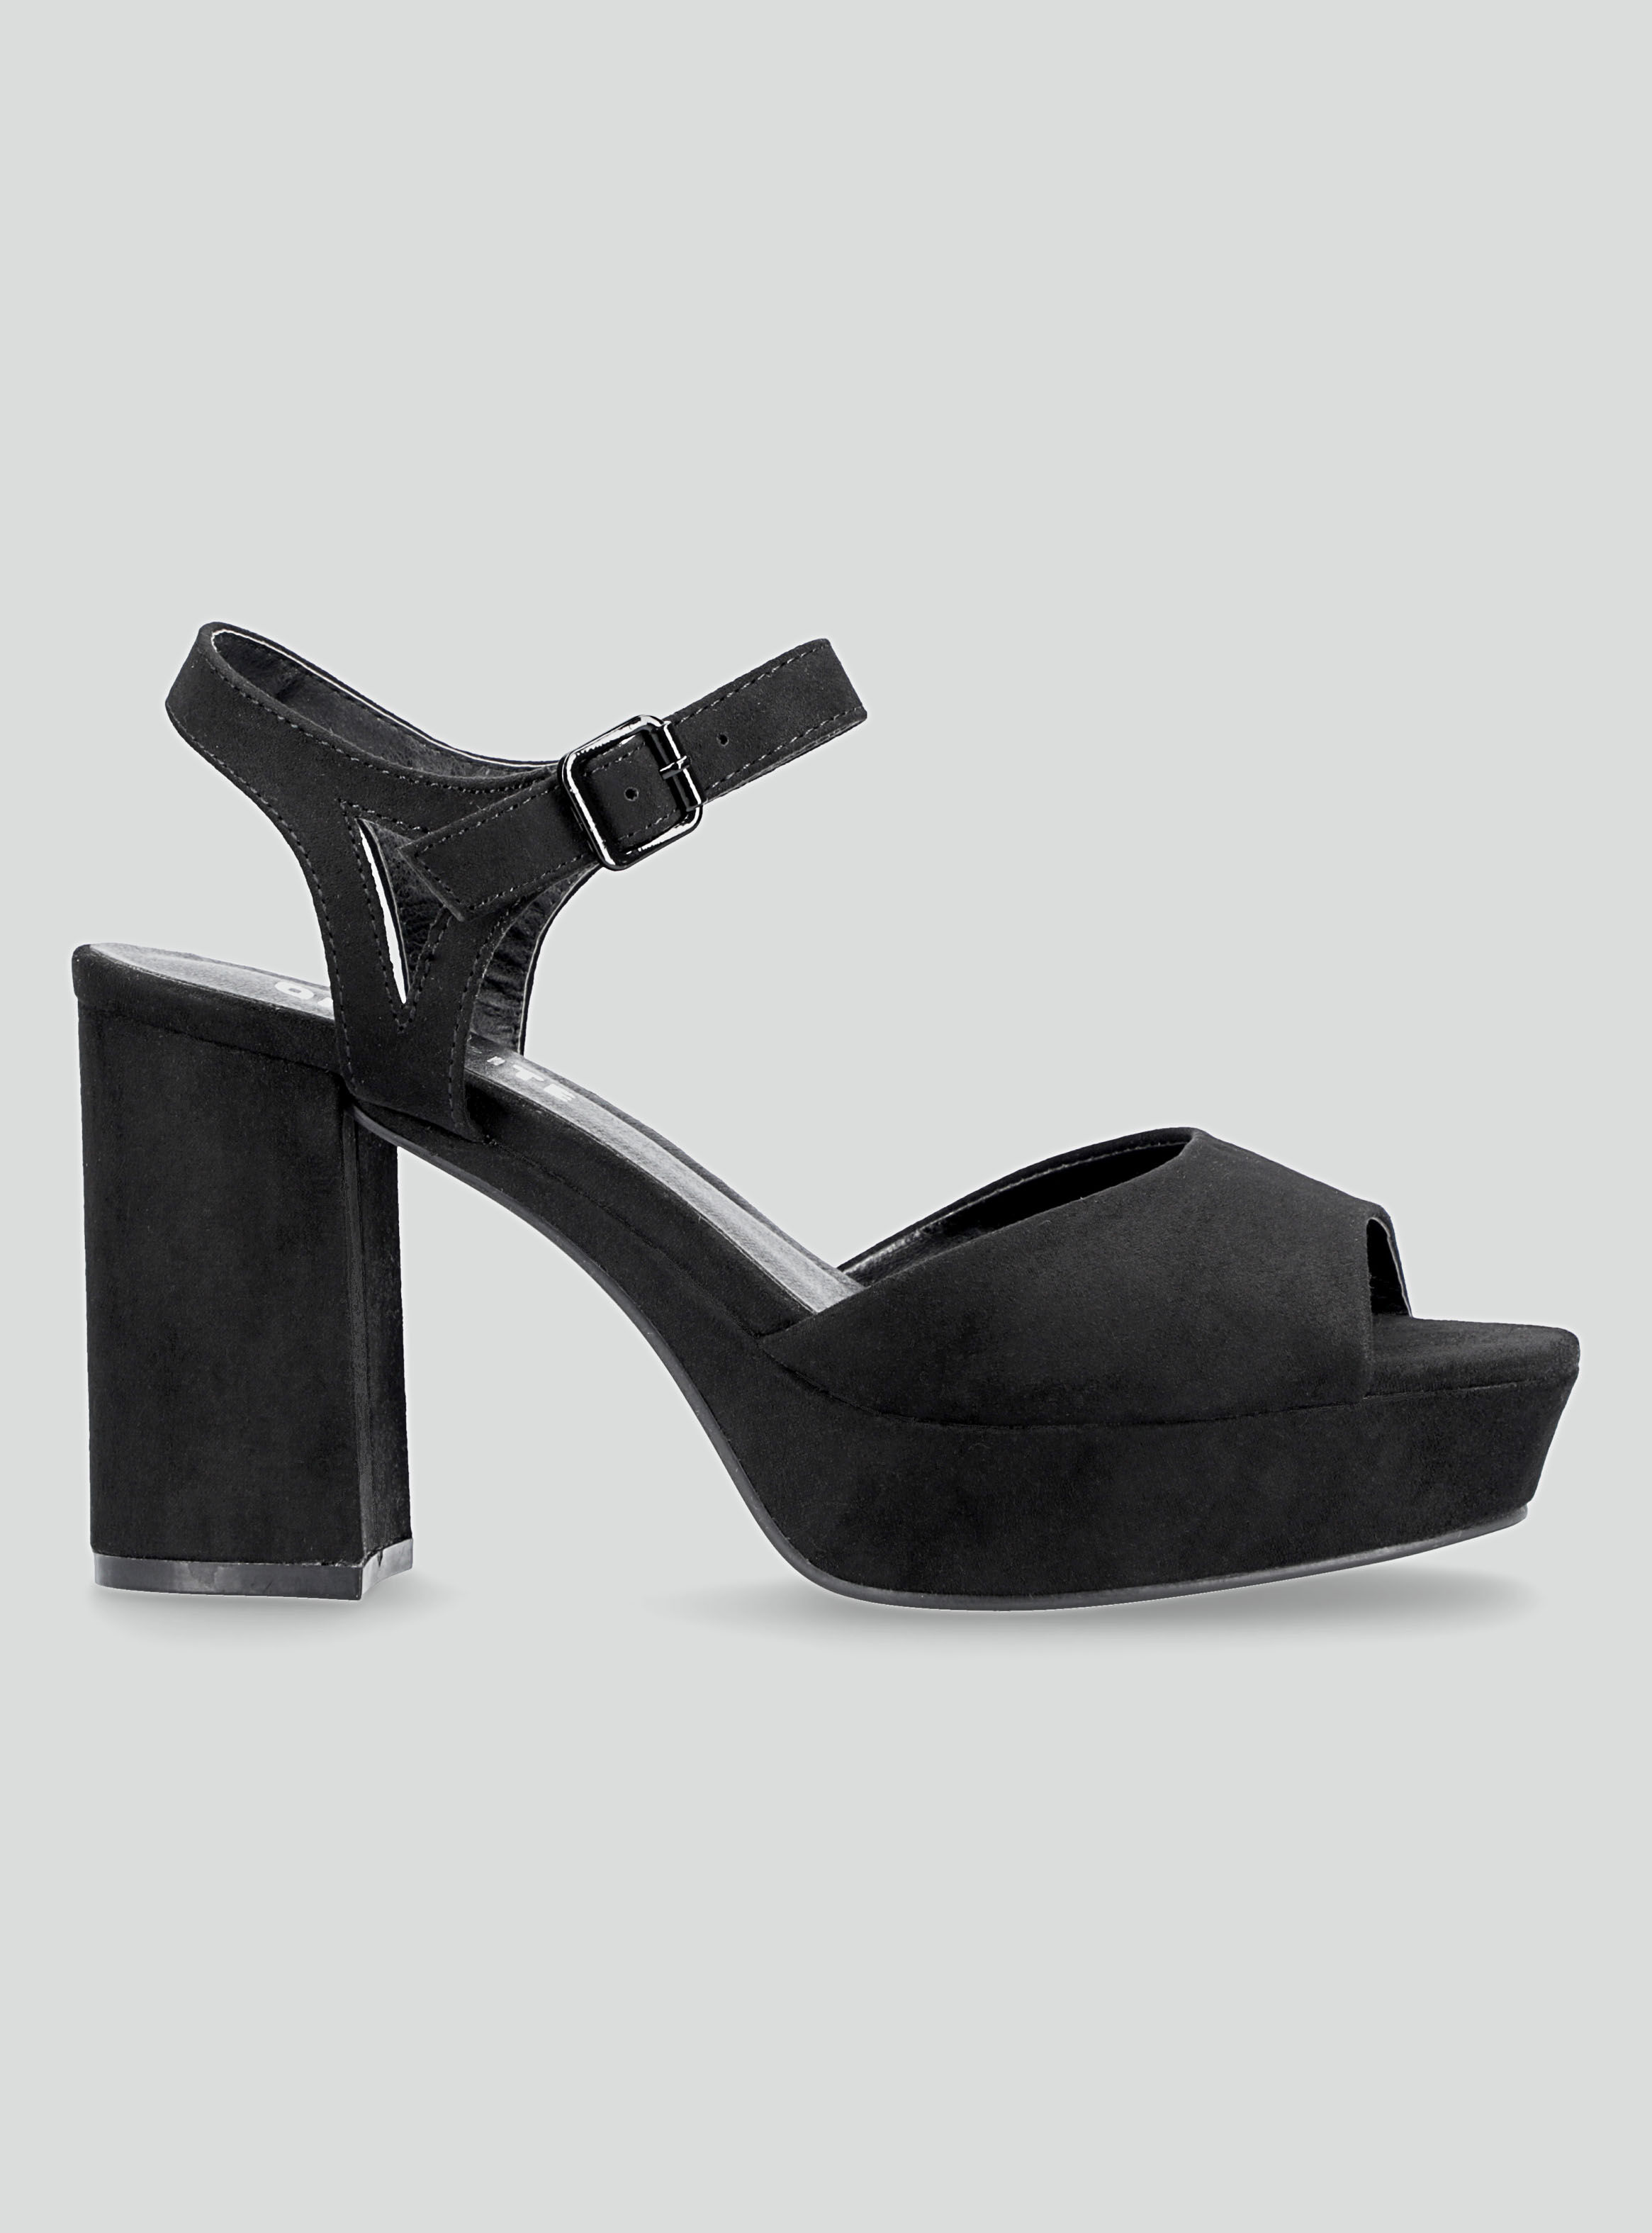 Mujer Zapatos de Tacones de Sandalias con cuña Sandalias Replay de Caucho de color Negro 